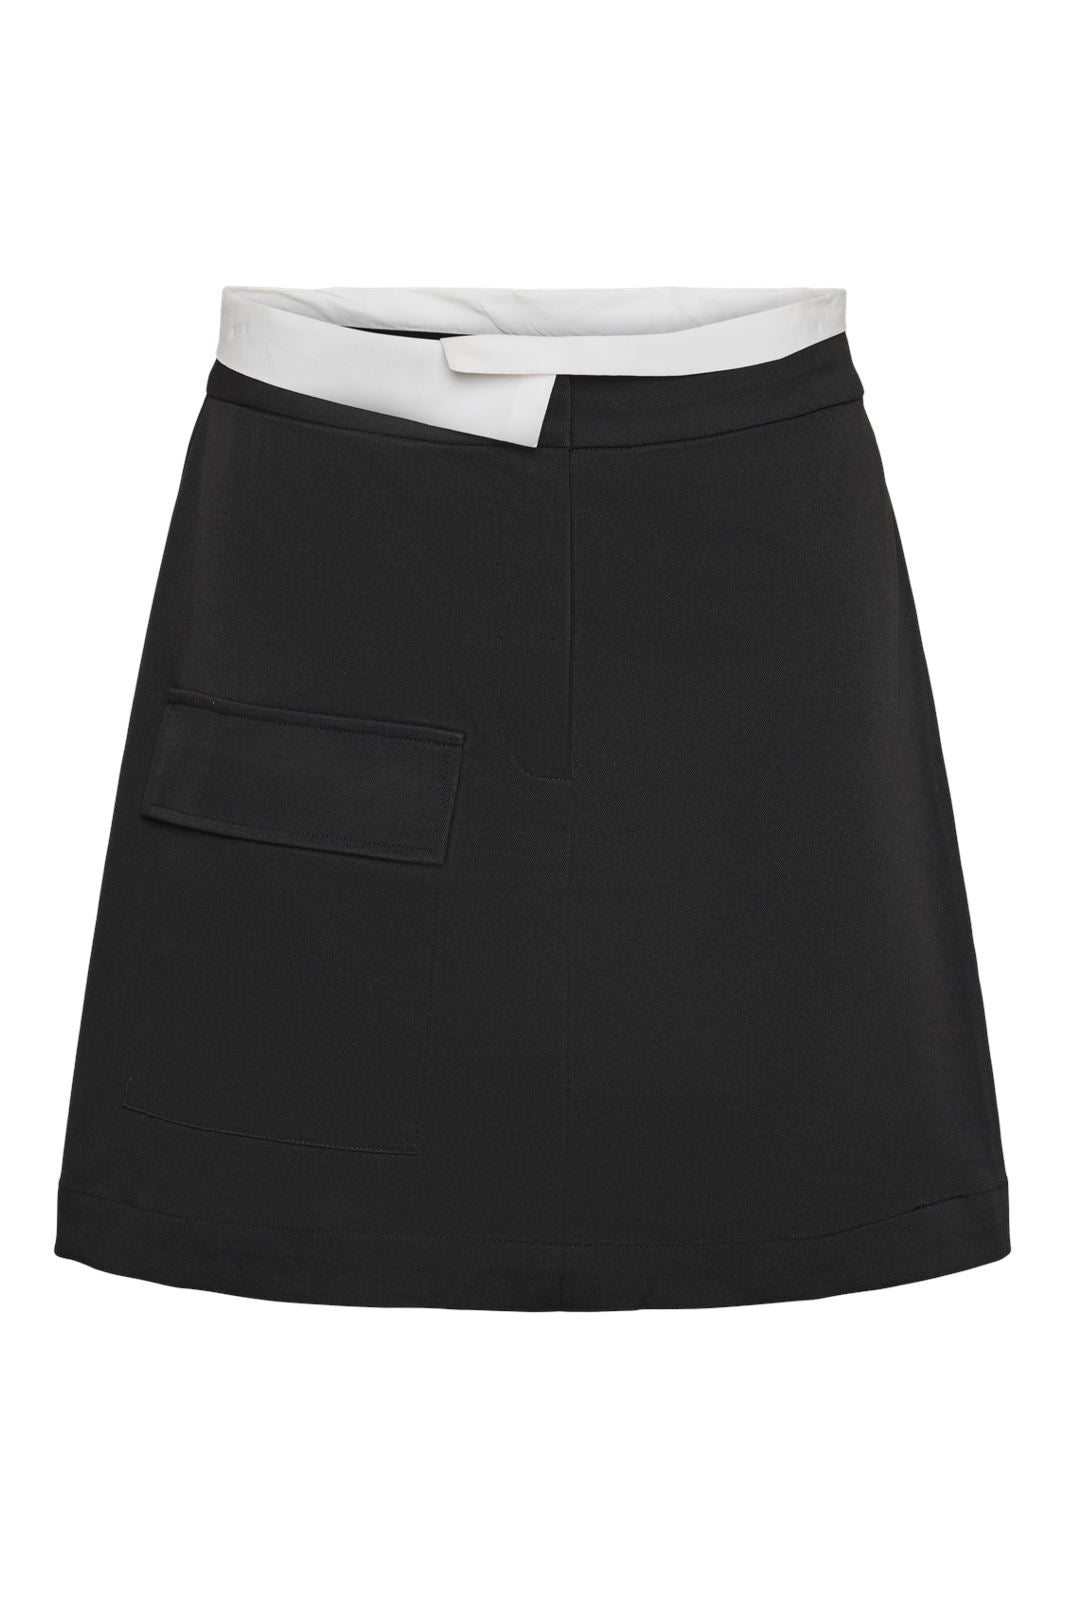 Pieces - Pctaylor Short Skirt - 4623630 Black